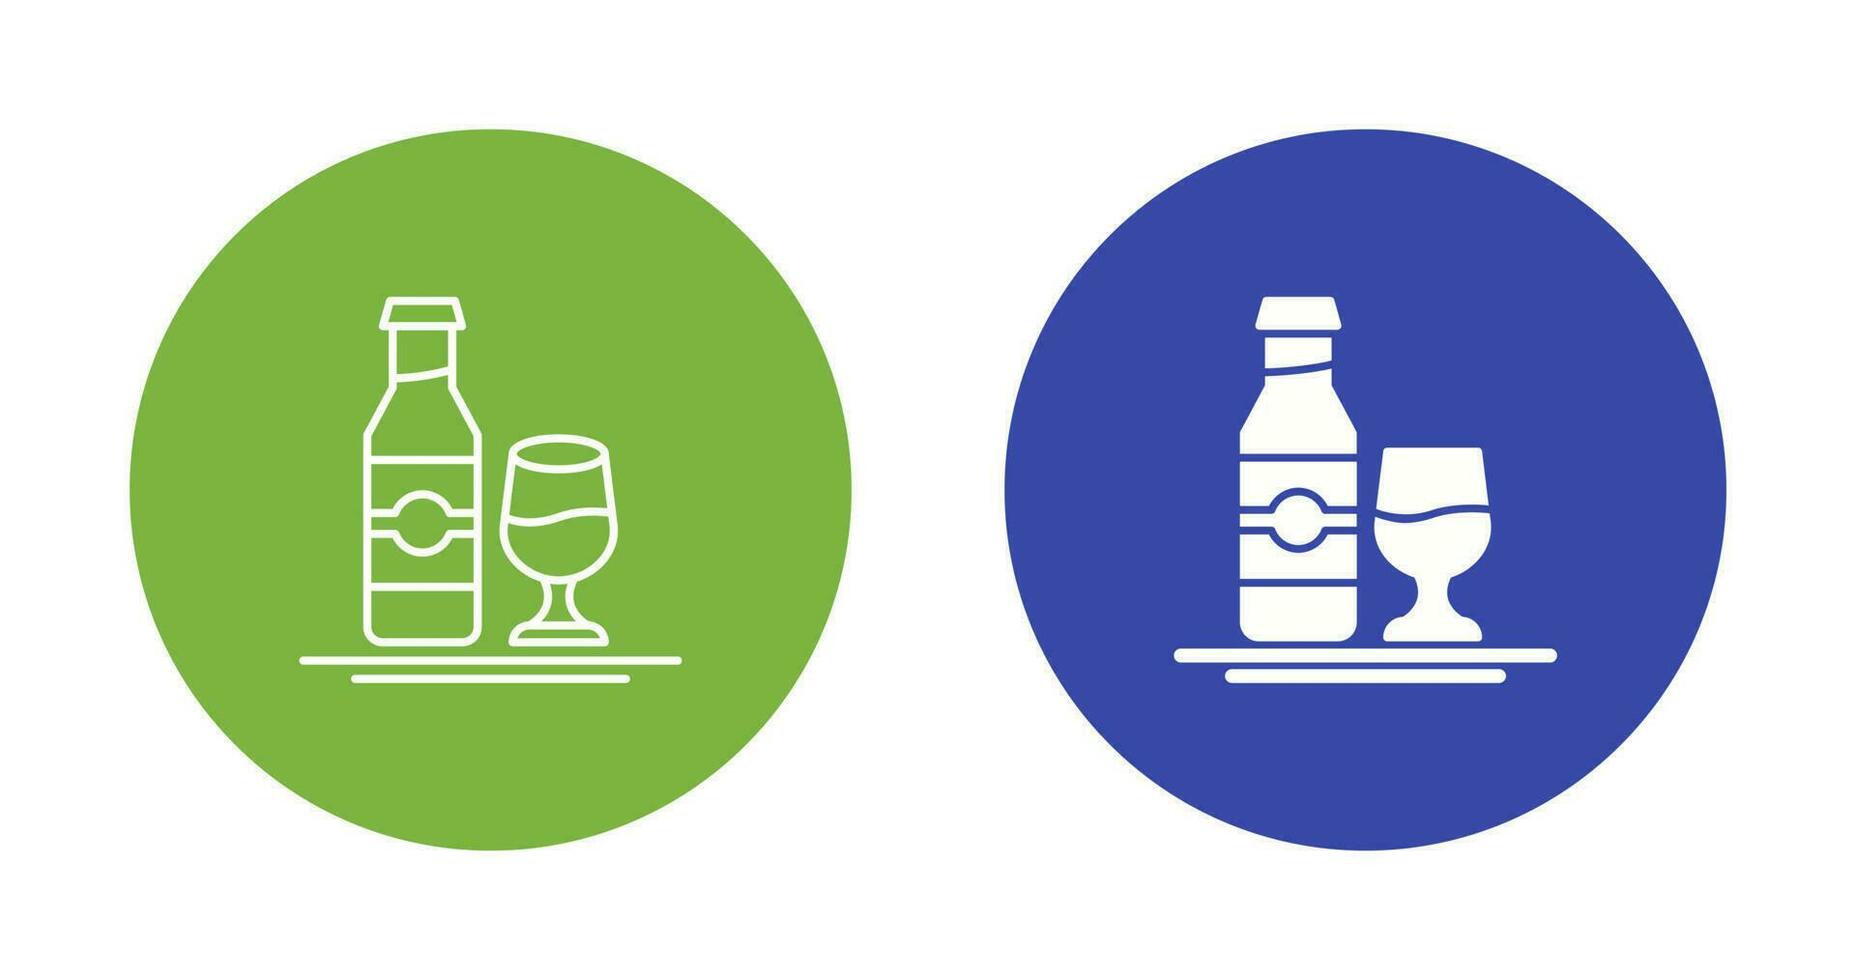 Vektorsymbol für alkoholfreie Getränke vektor